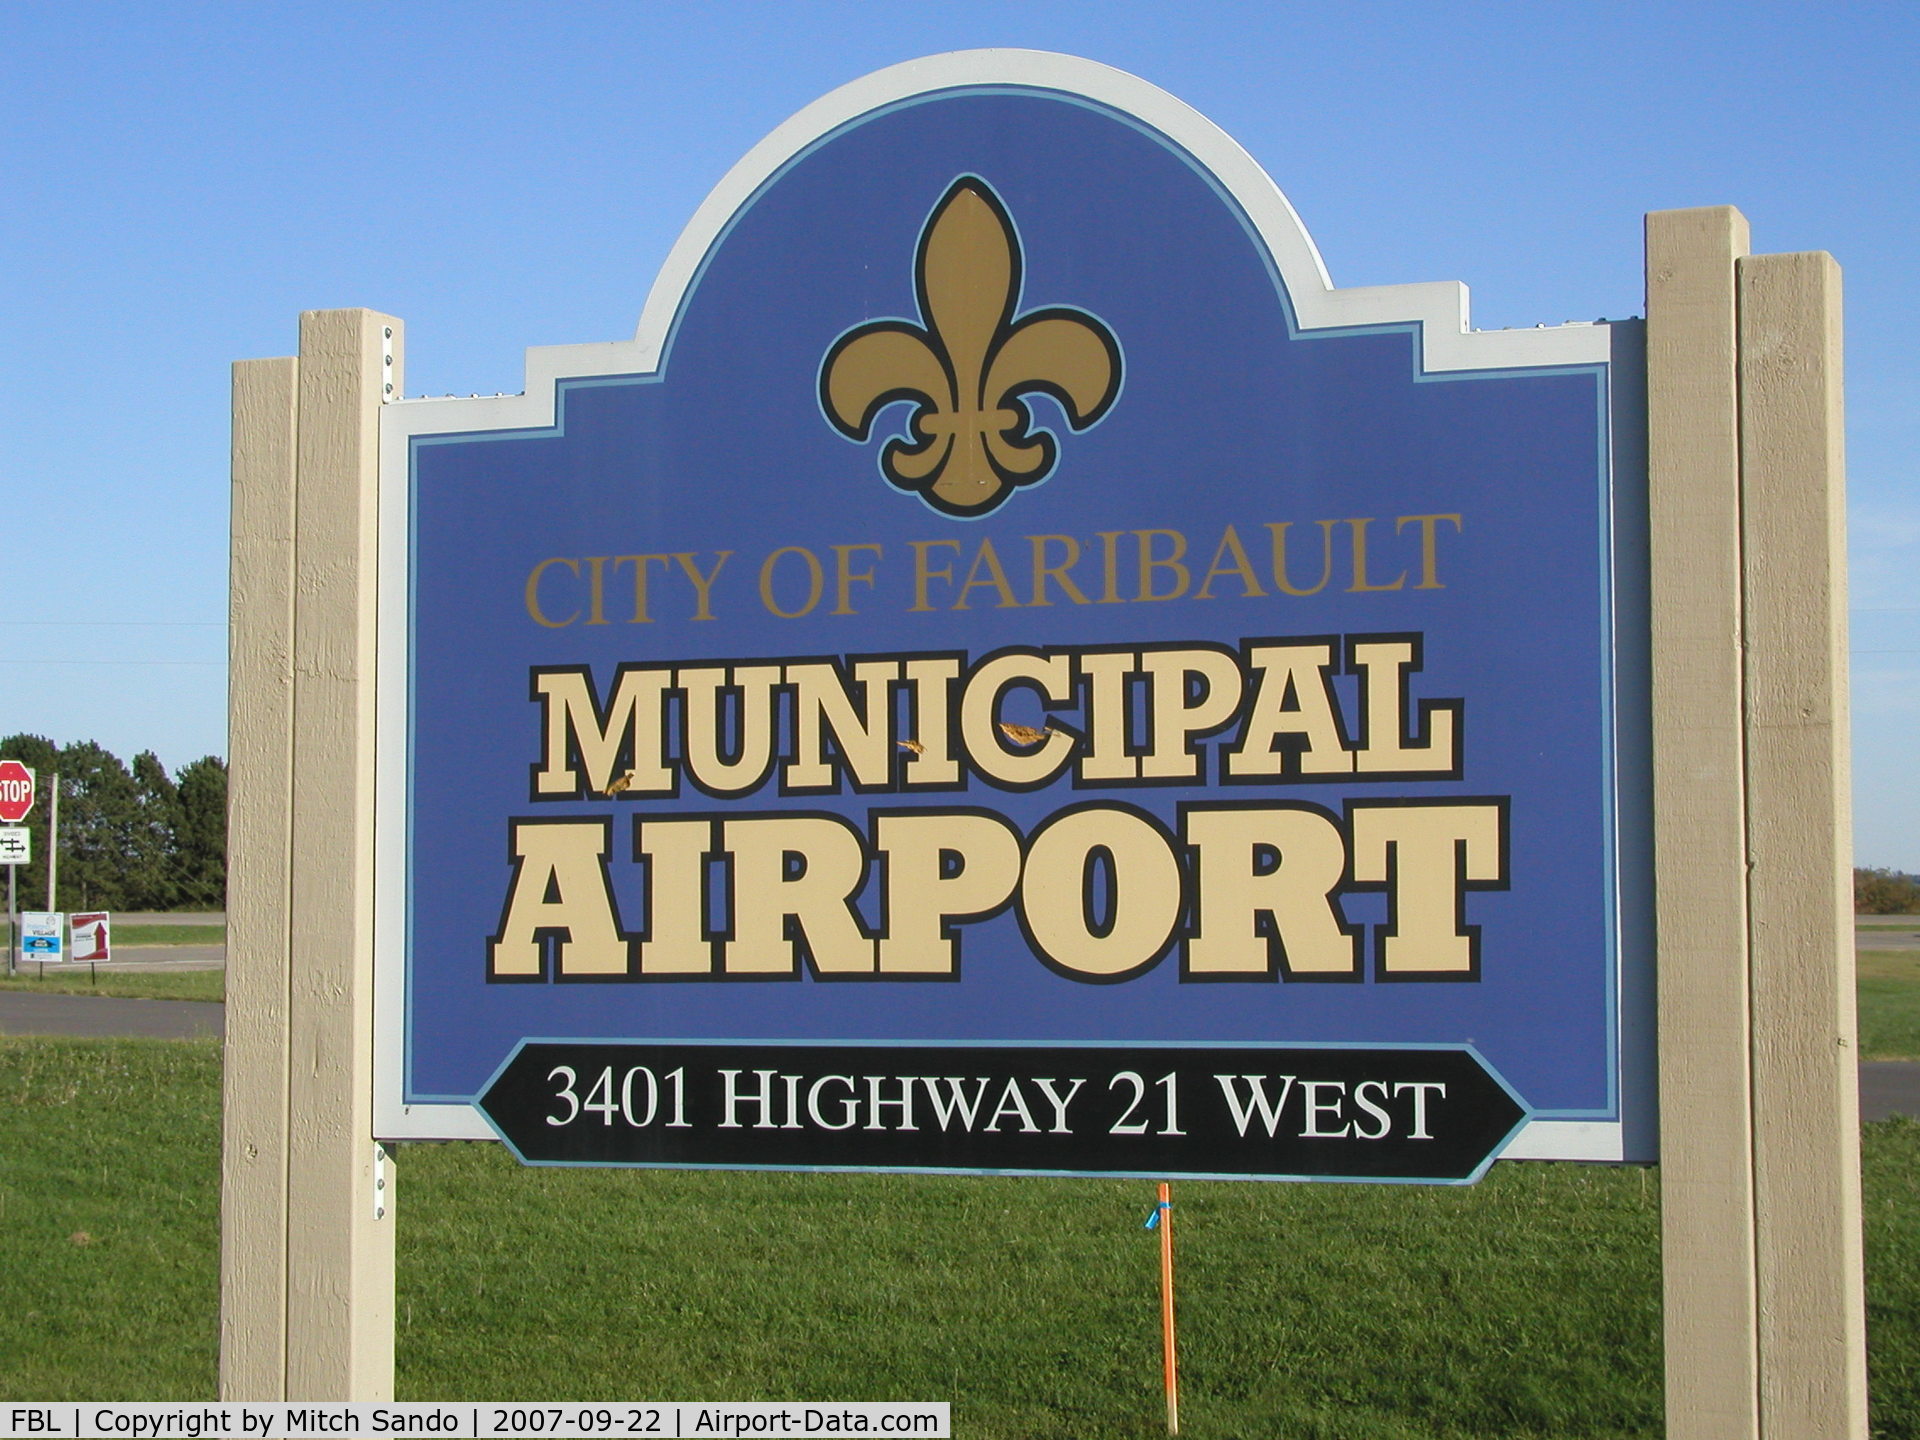 Faribault Municipal Airport (FBL) - Faribault Municipal Airport in Faribault, MN.